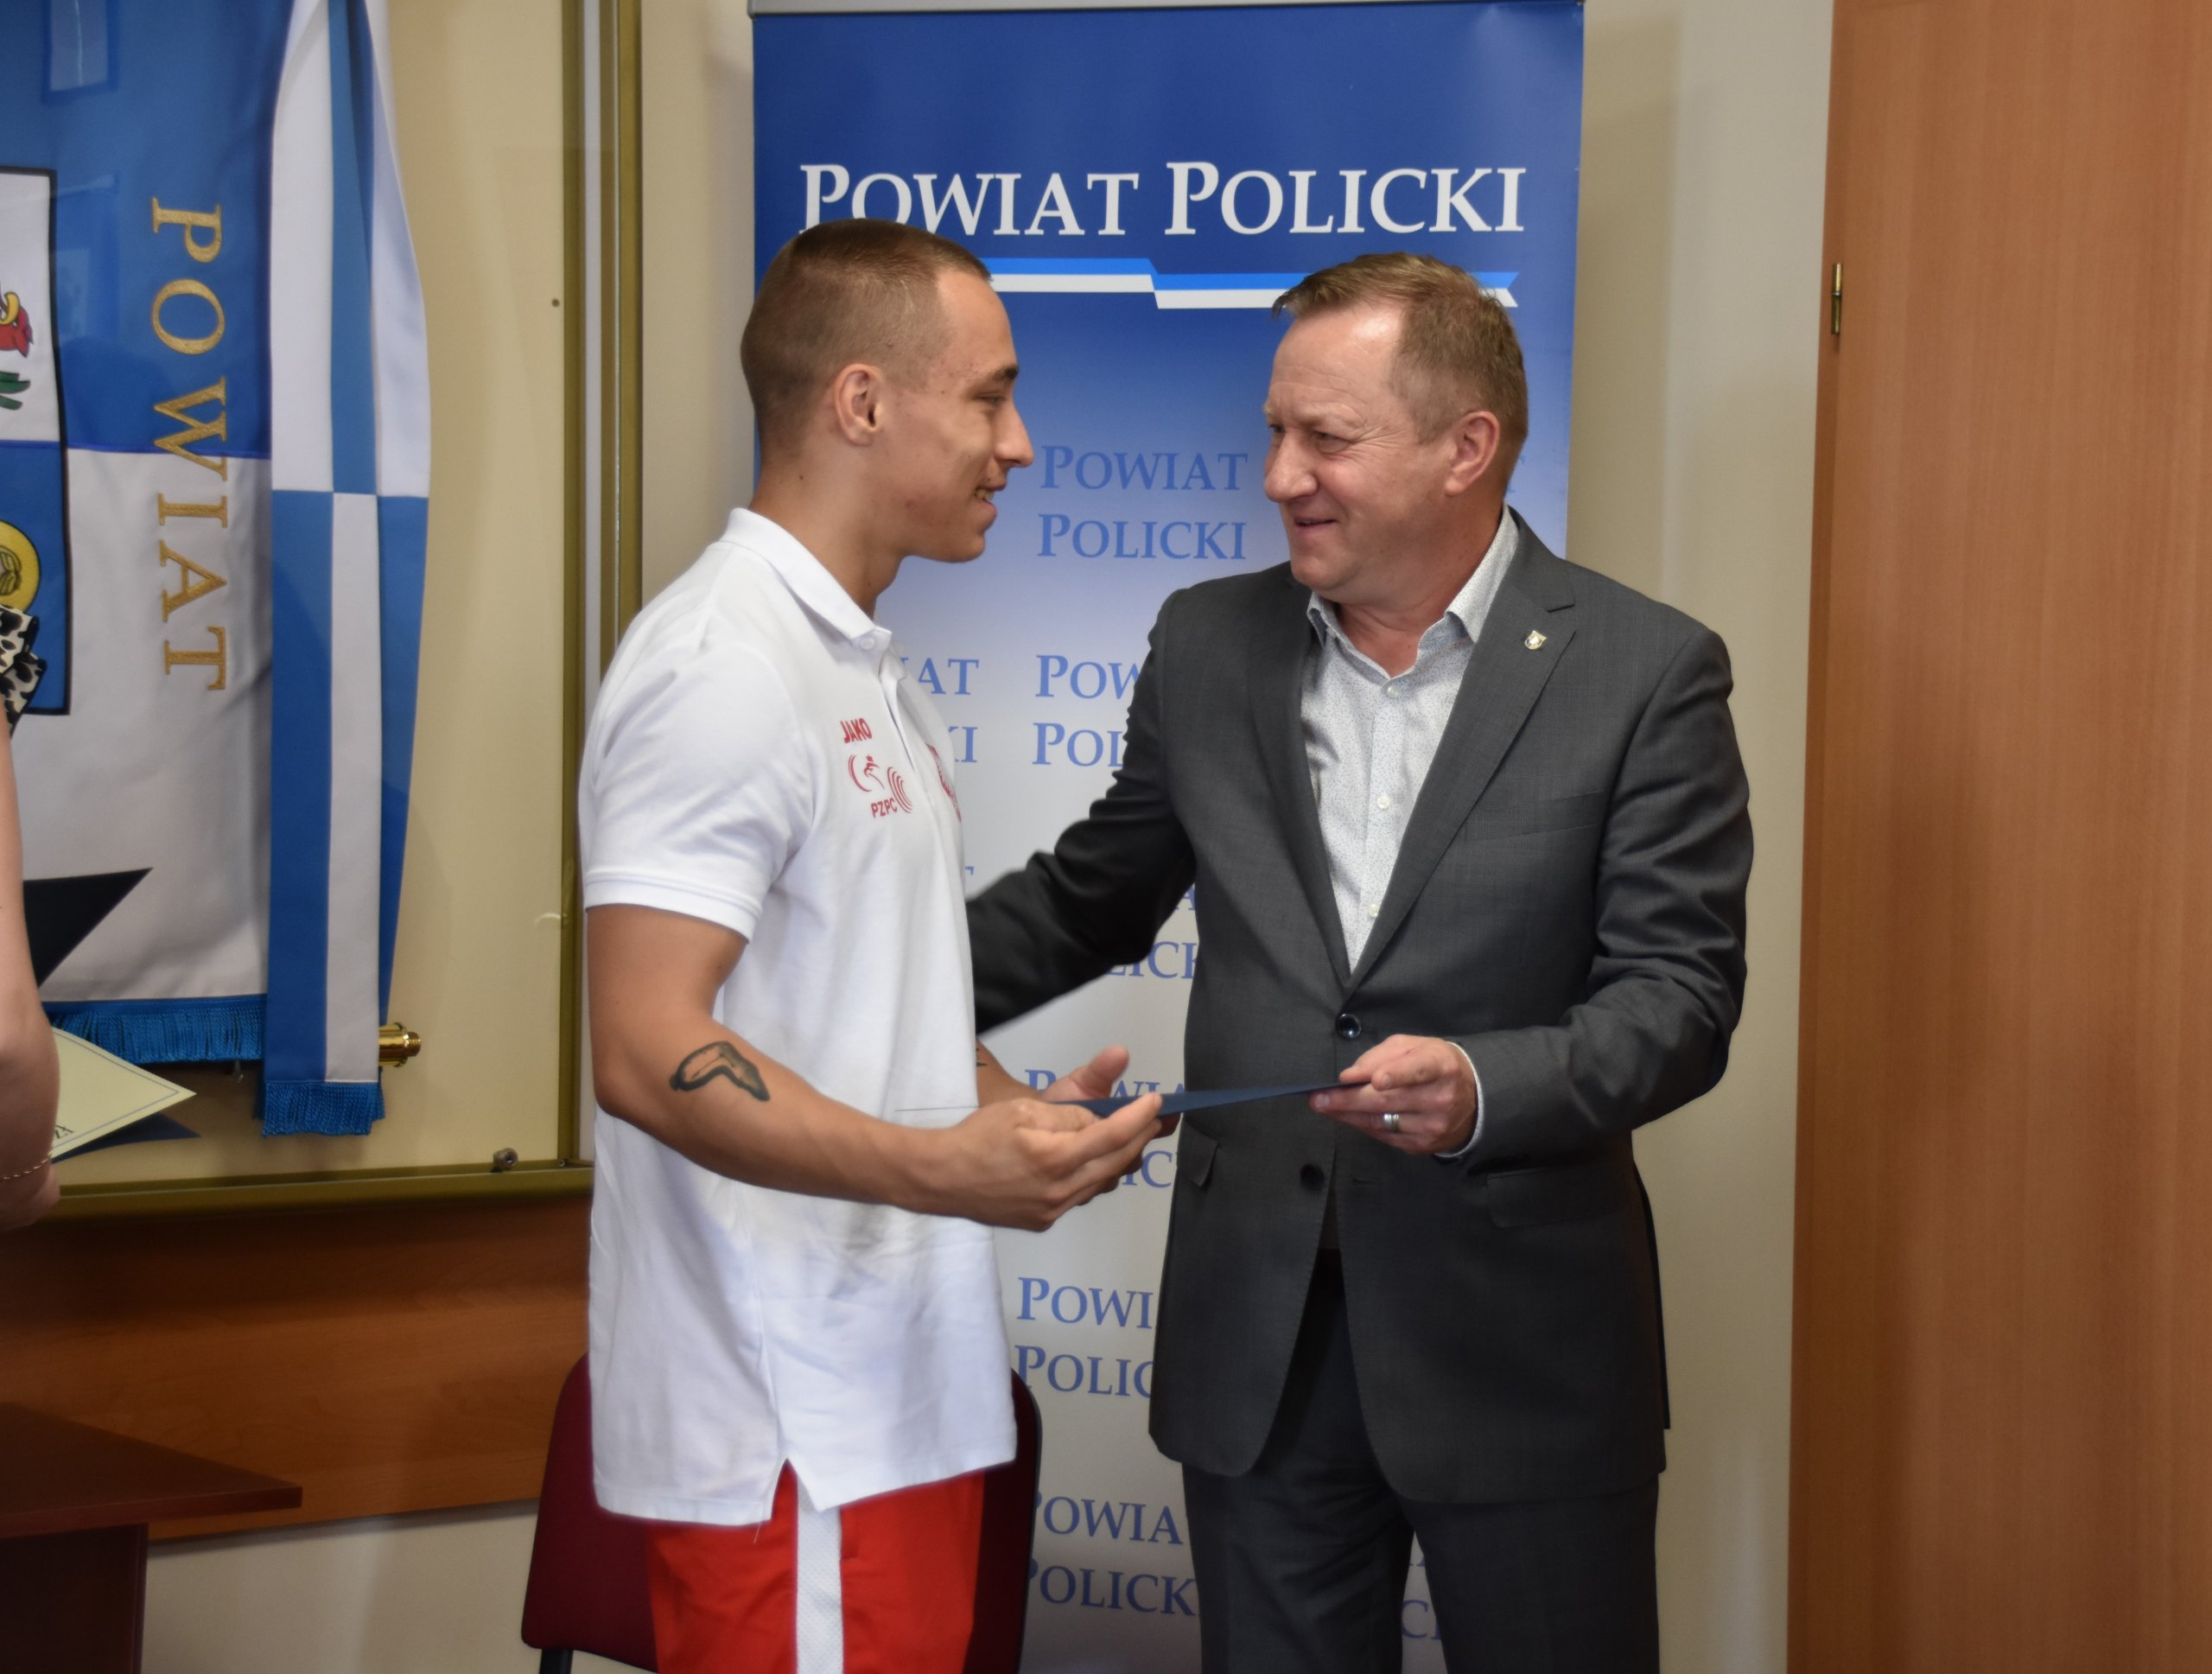 Moment podziękowania wraz z wręczeniem upominku od Andrzeja Bednarka Starosty Polickiego podczas spotkania dla zawodnika Klubu AKS "Promień" Police.